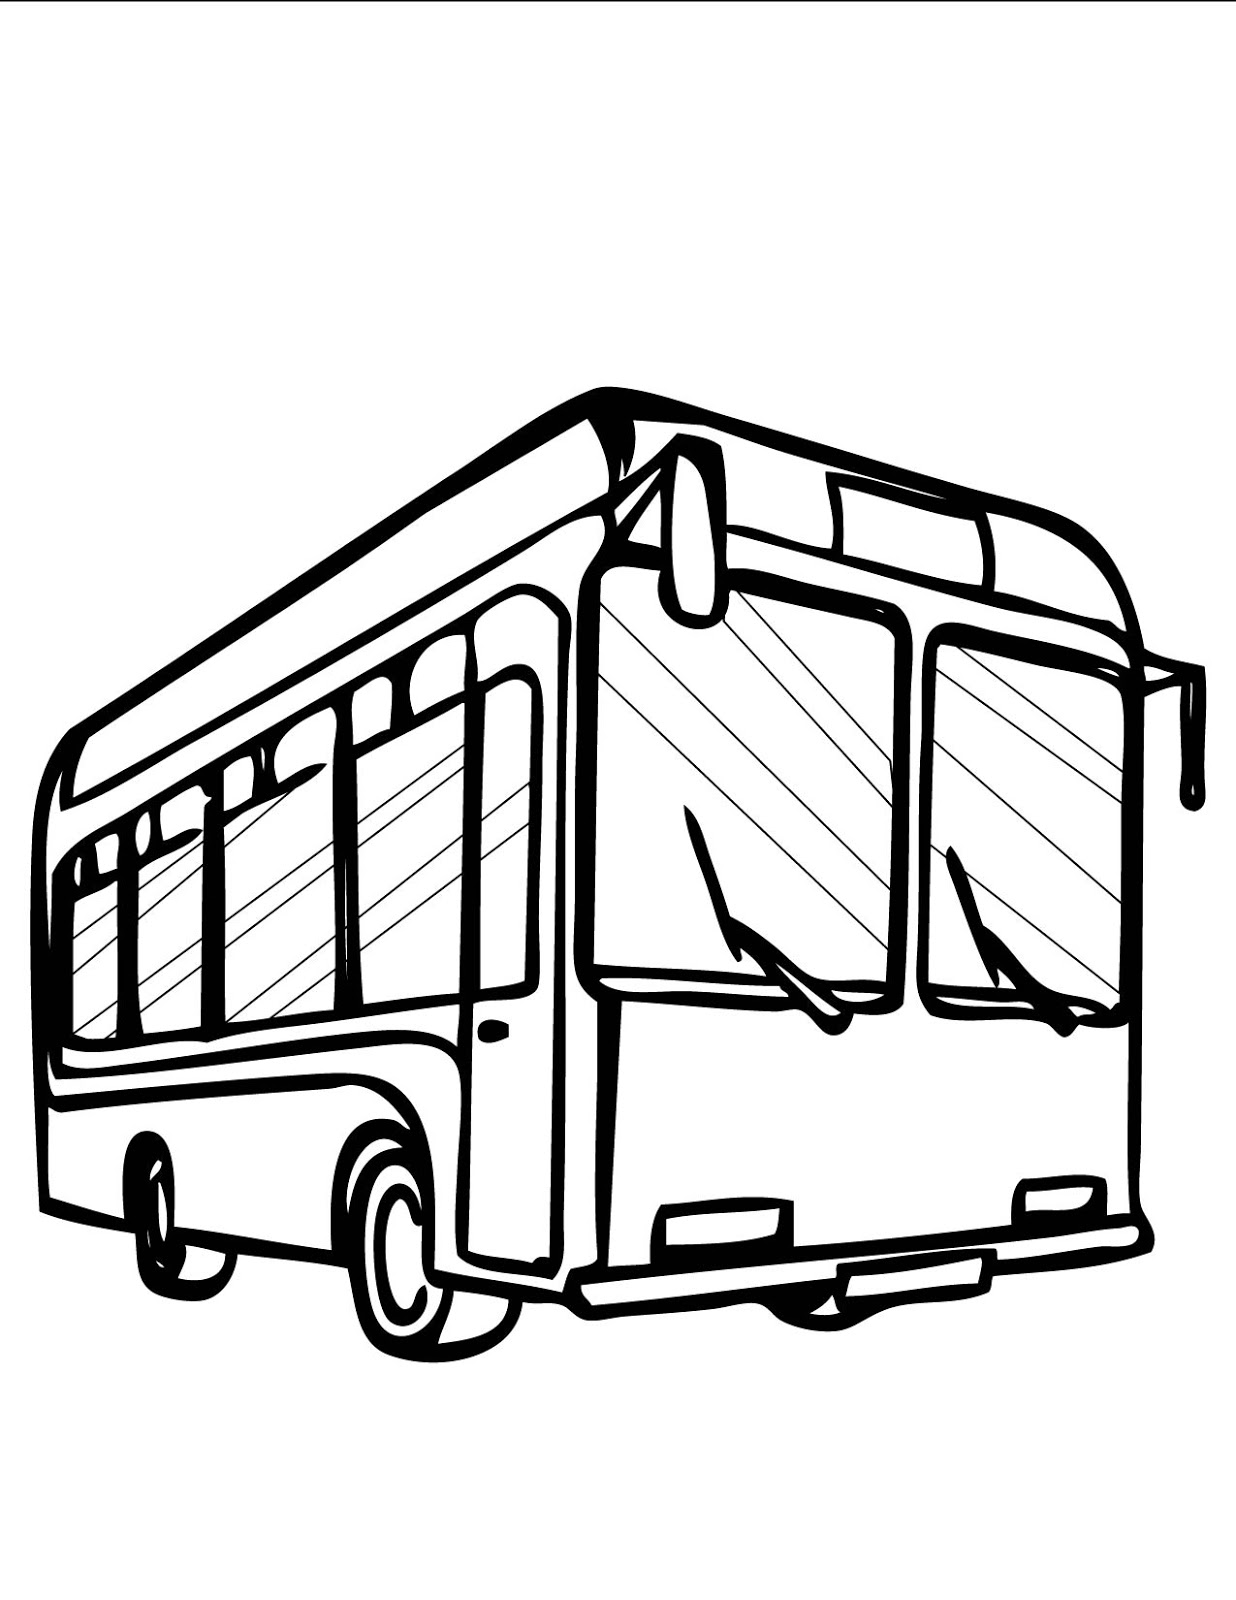 Dibujo de un autobús escolar en diferentes ángulos para colorear